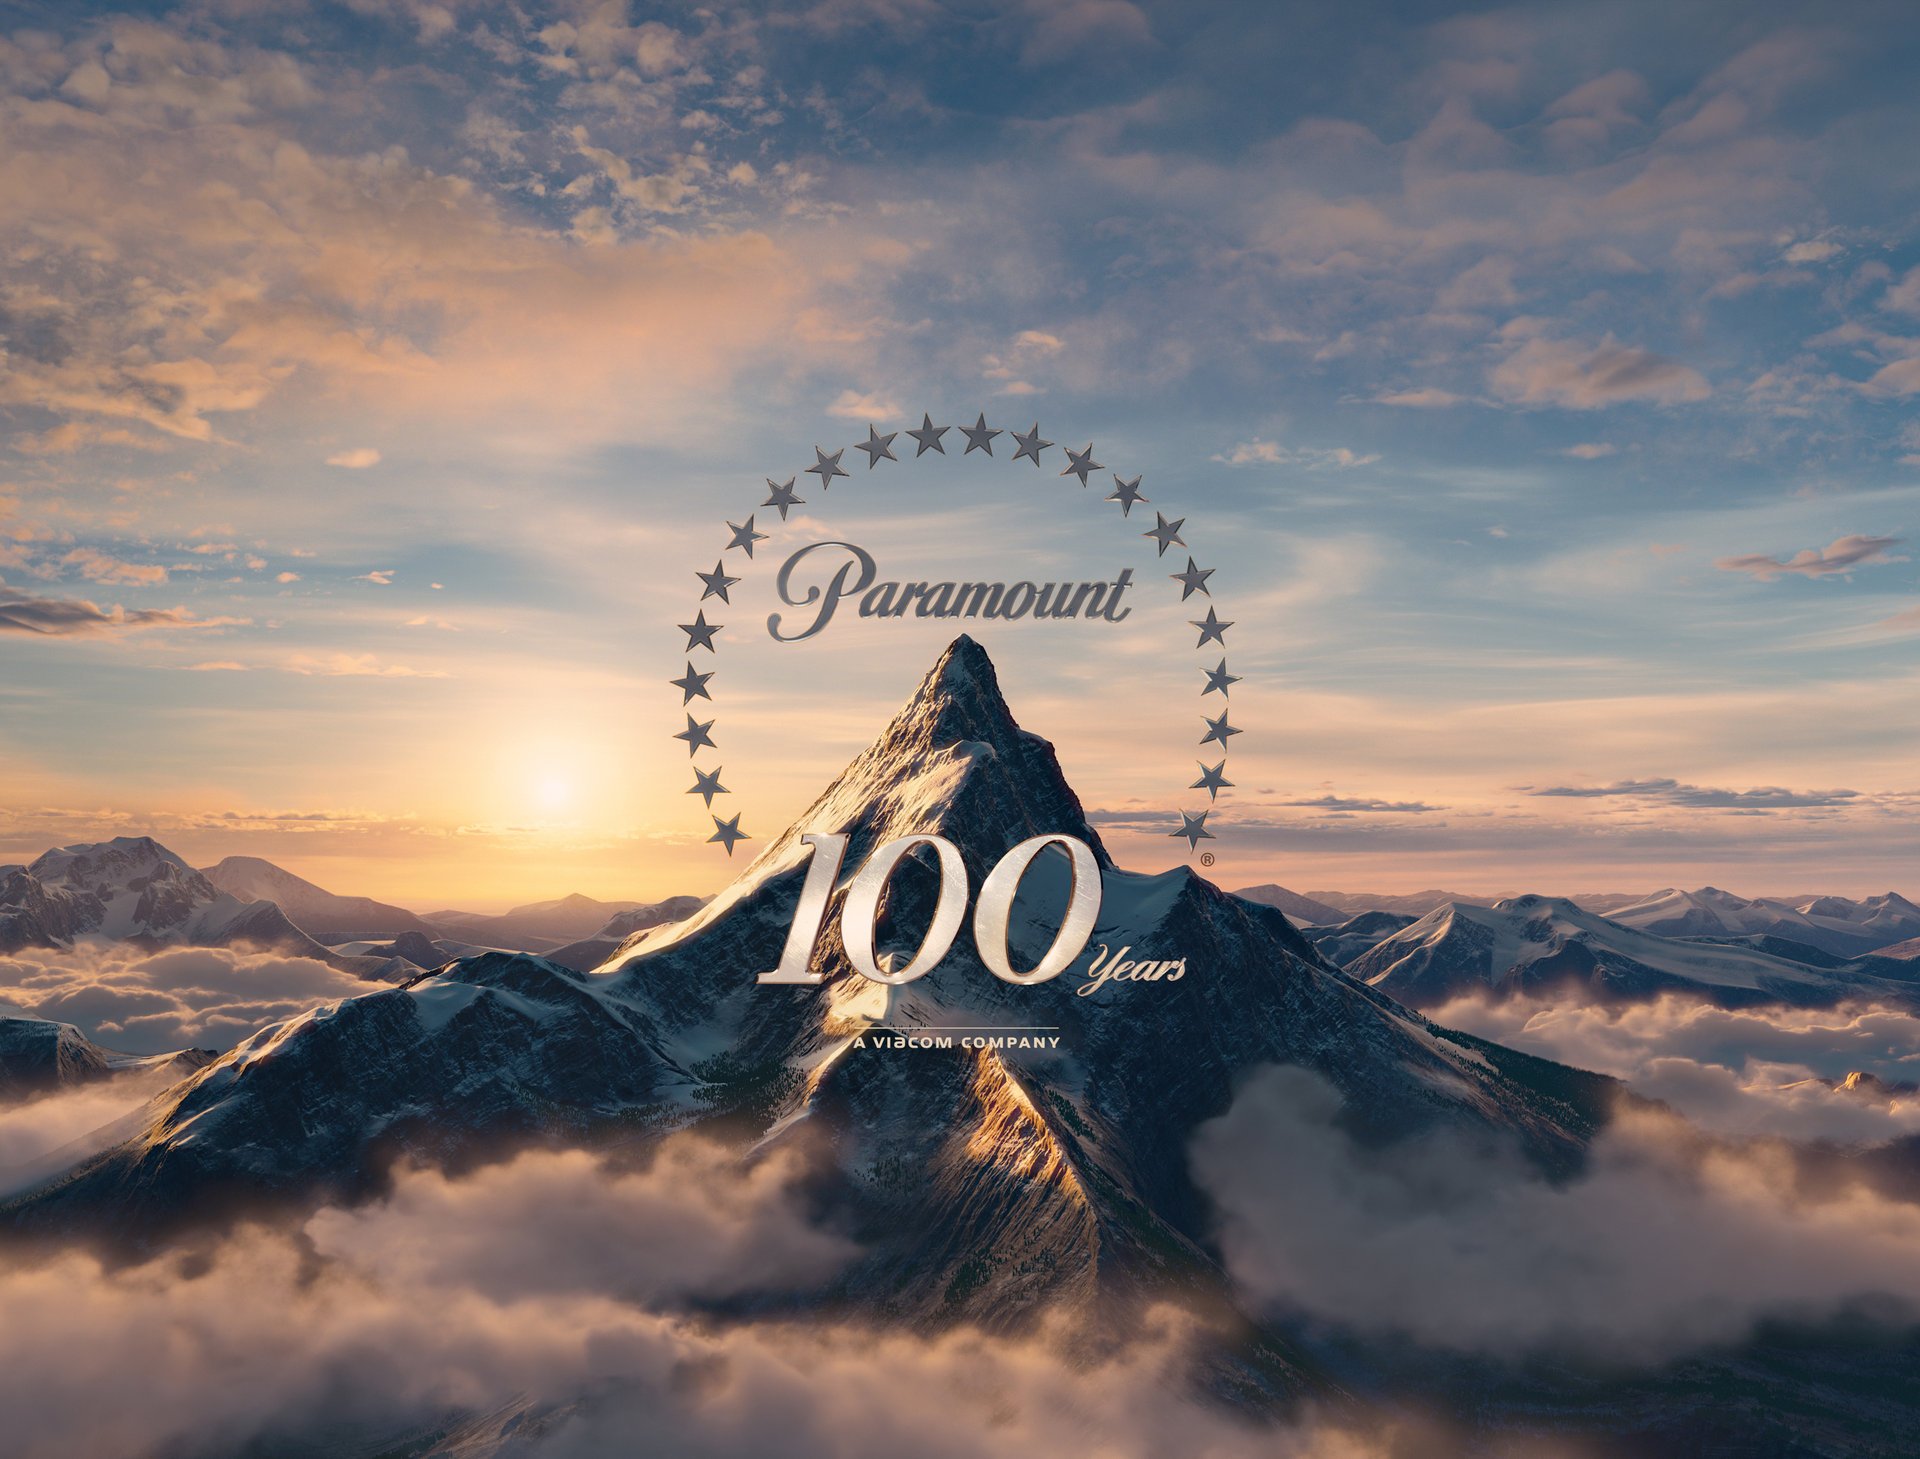 Заставка кинокомпании Paramount на 100 лет